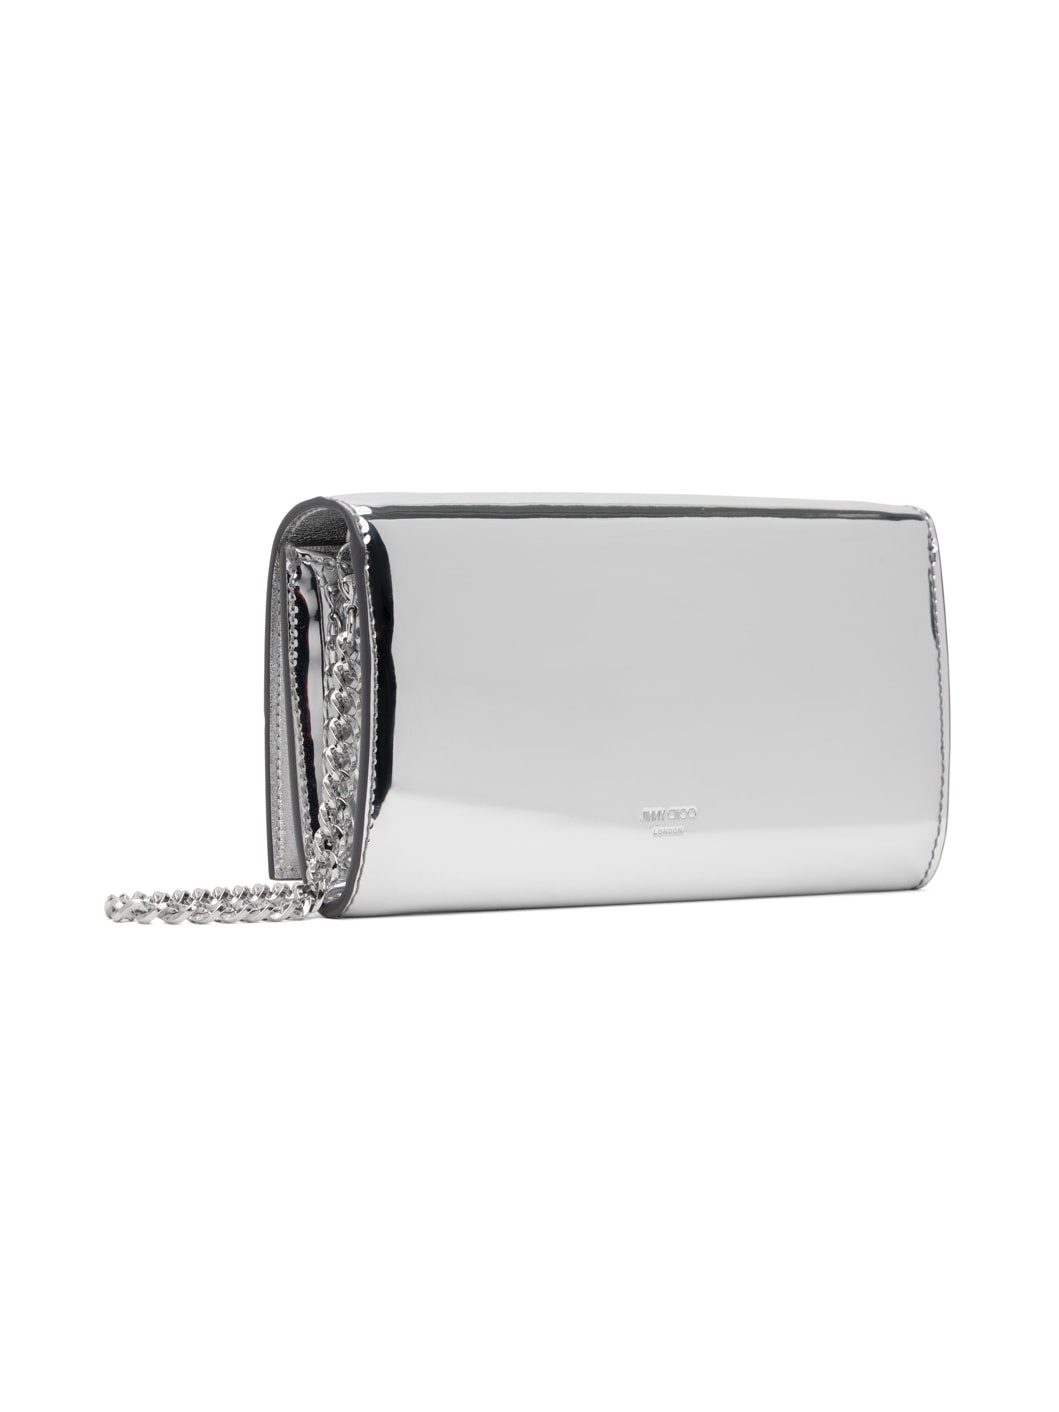 Silver Avenue Wallet Bag - 3